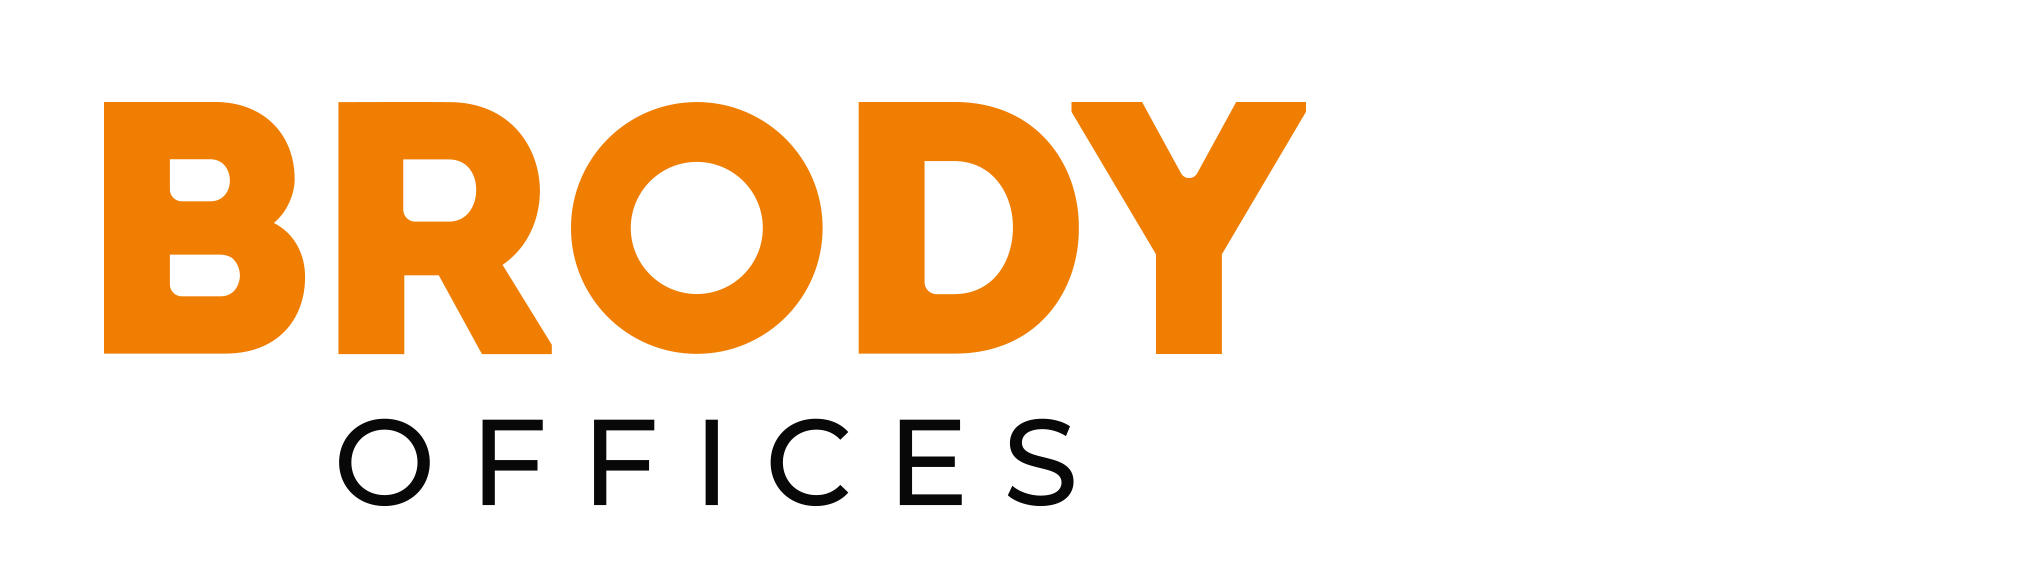 kantoor te huur Antwerpen Brussel Luchthaven Brody kantoren logo